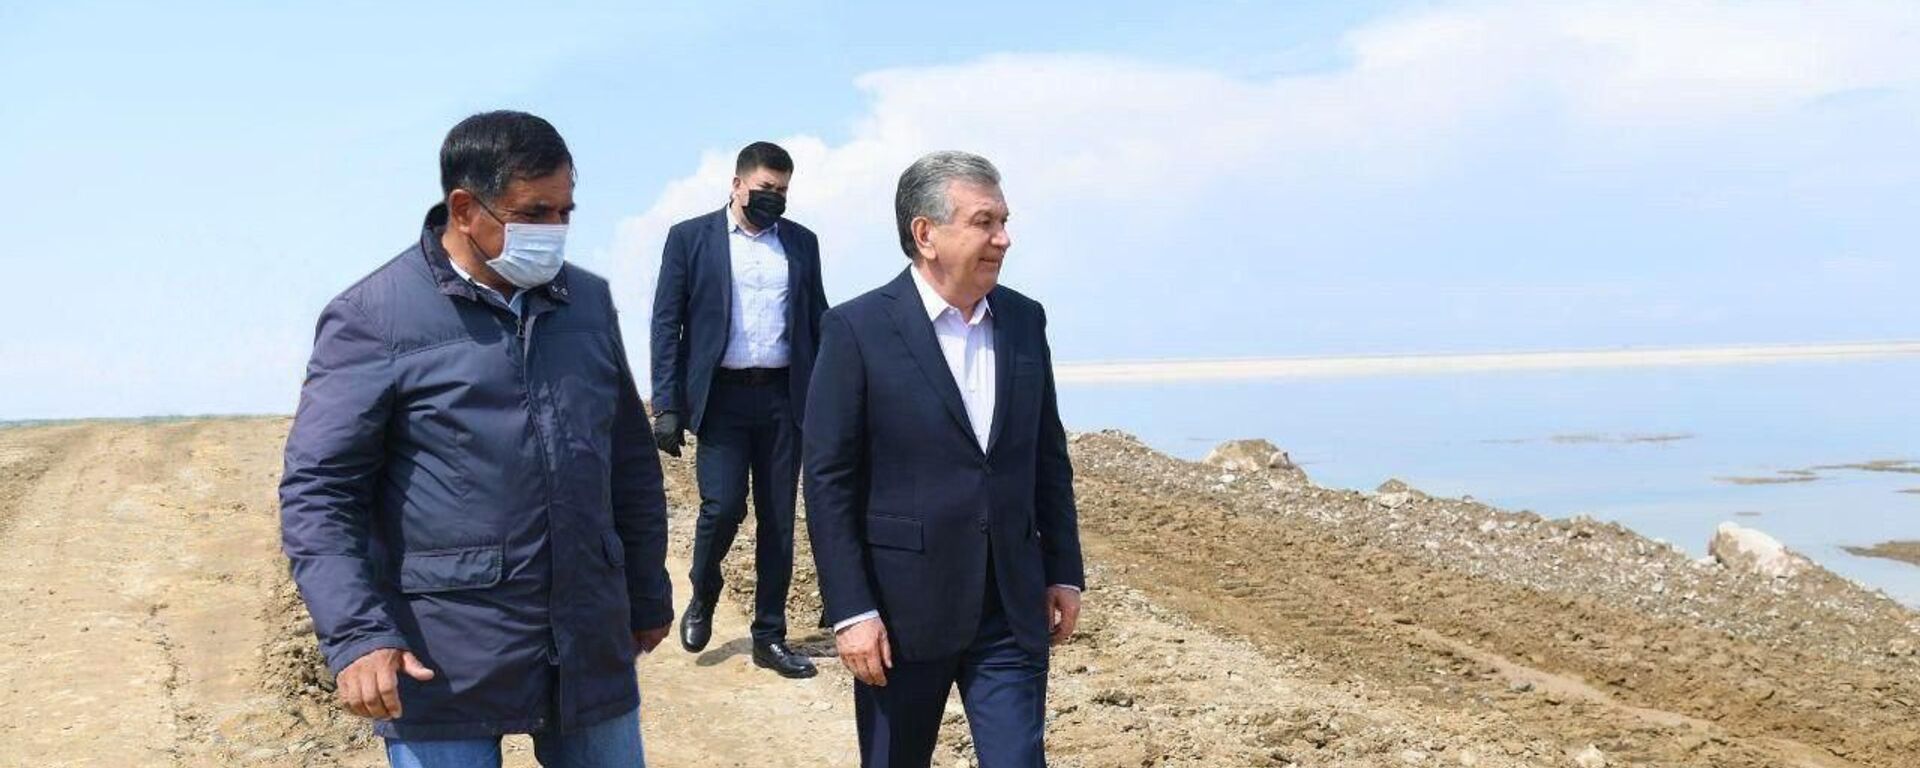 Президент Узбекистана Шавкат Мирзиёев вновь посетил Сырдарьинскую область - Sputnik Узбекистан, 1920, 03.05.2020